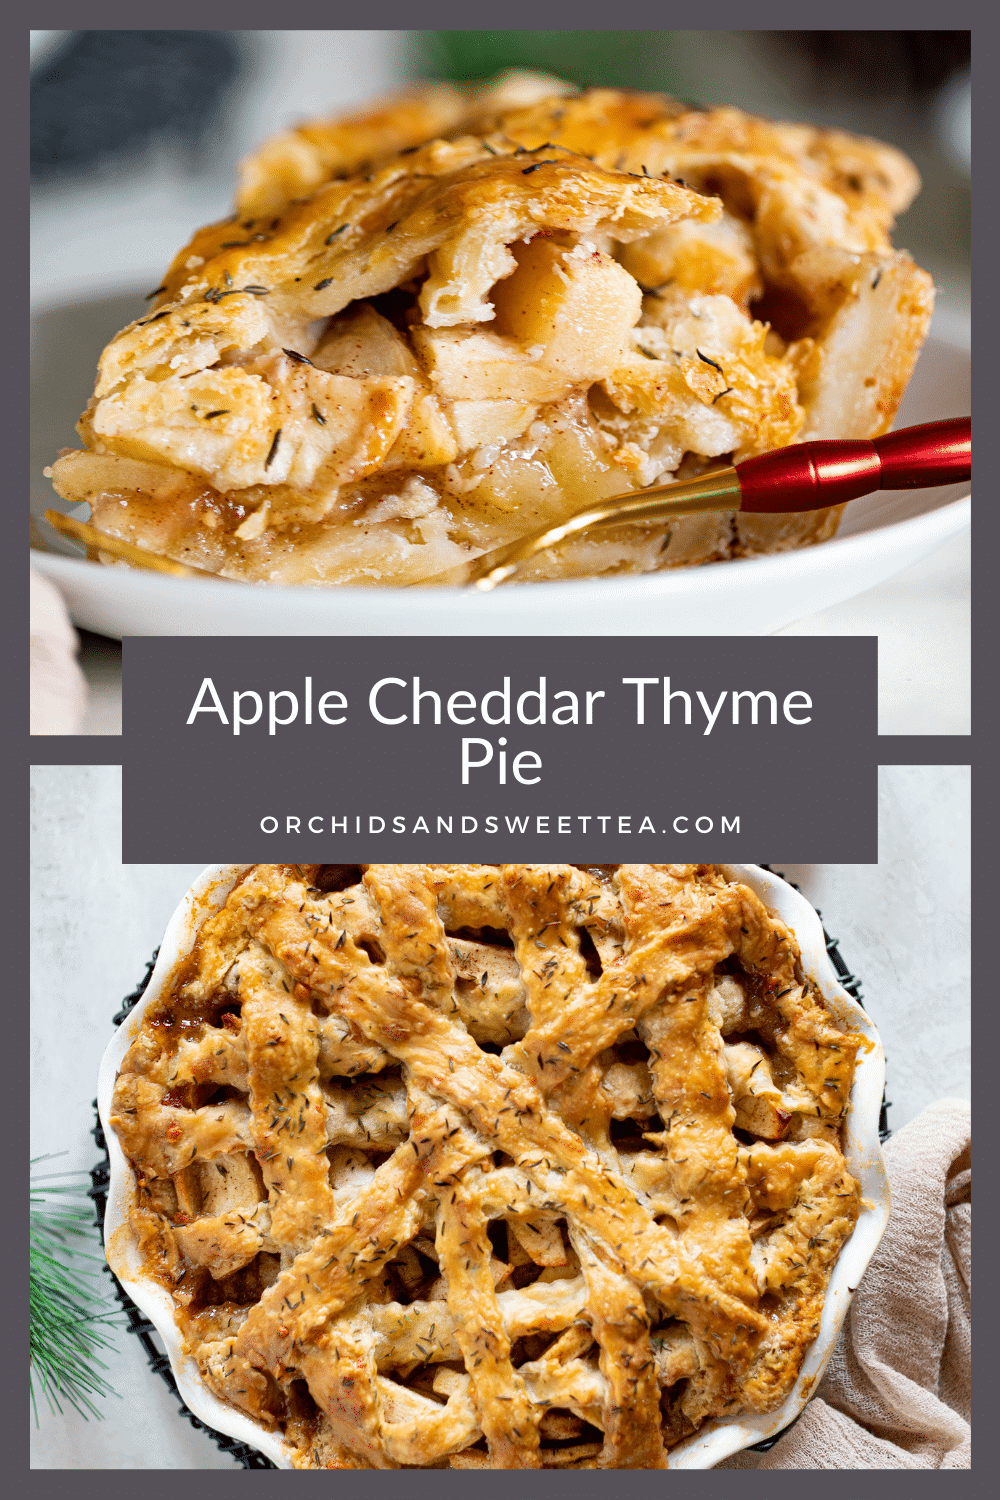 Apple Cheddar Thyme Pie